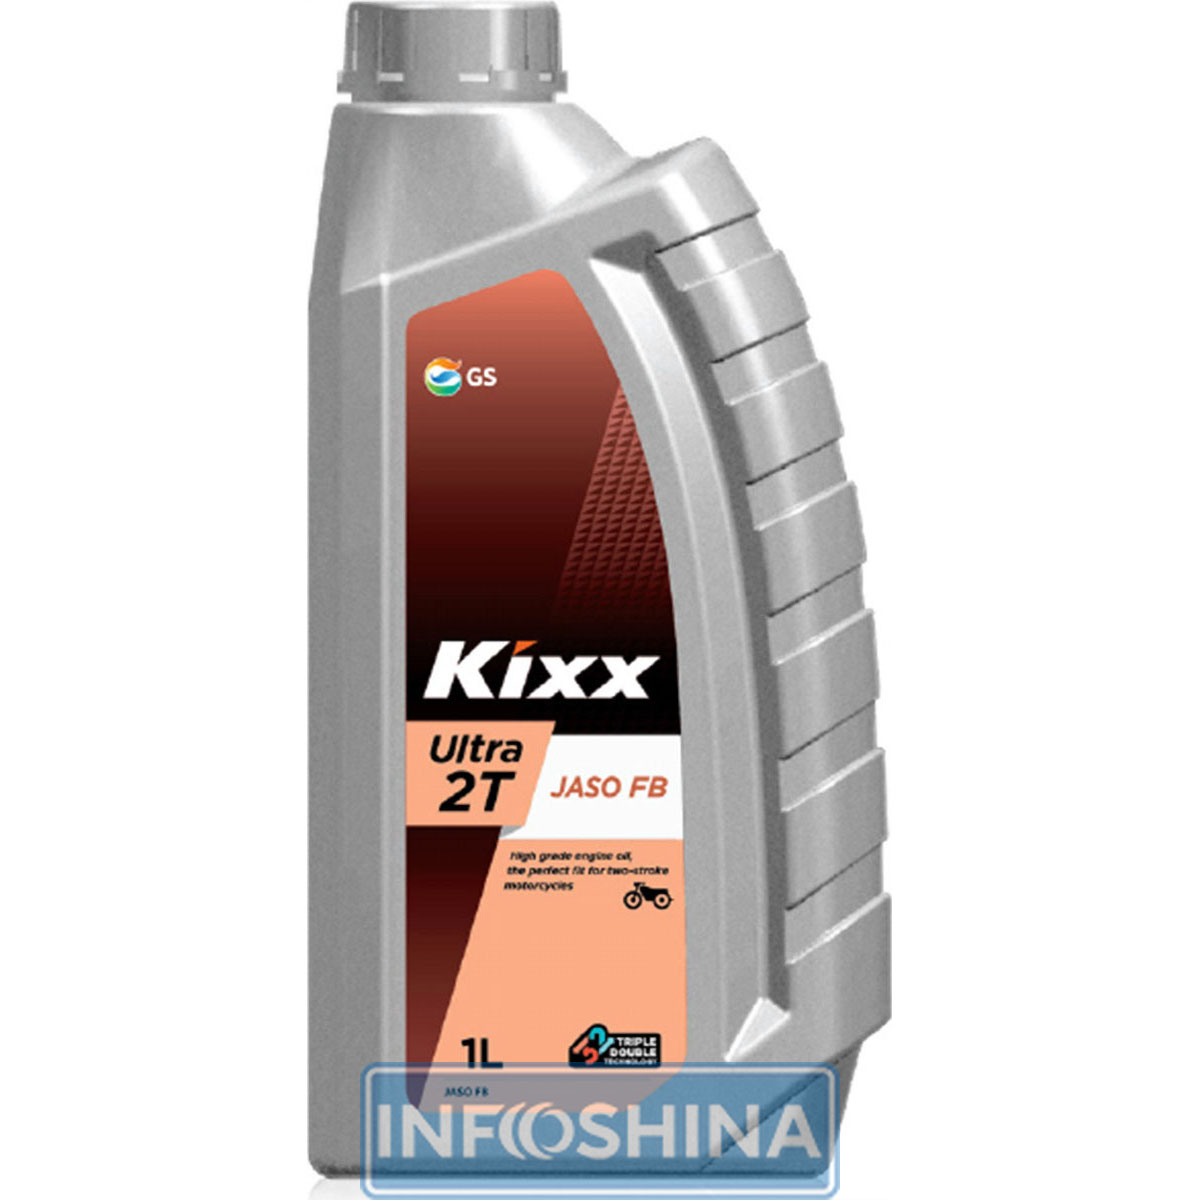 Kixx GS Ultra 2T